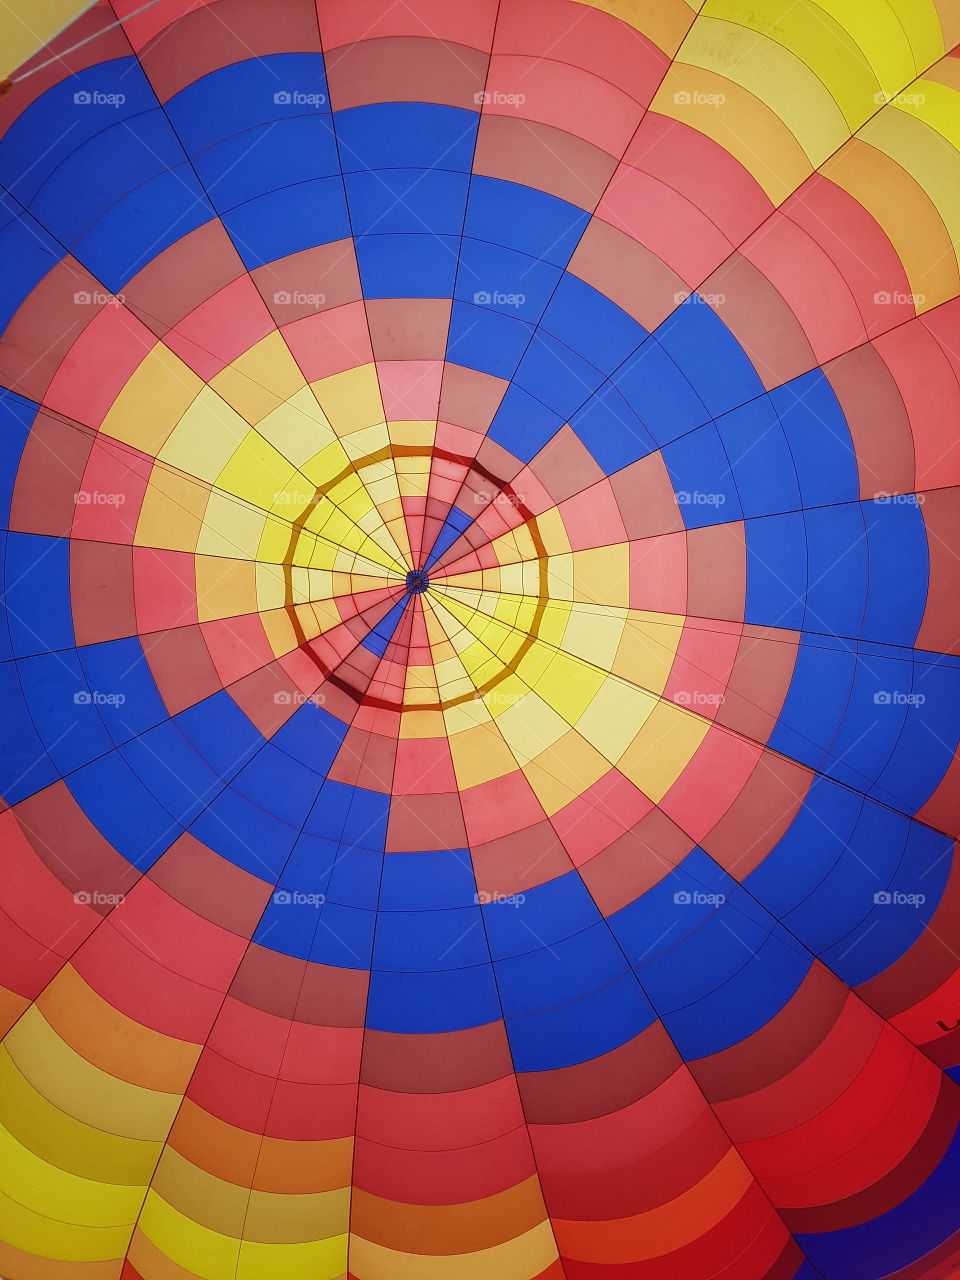 Balloon, Hot Air Balloon, Airship, Motley, Fun